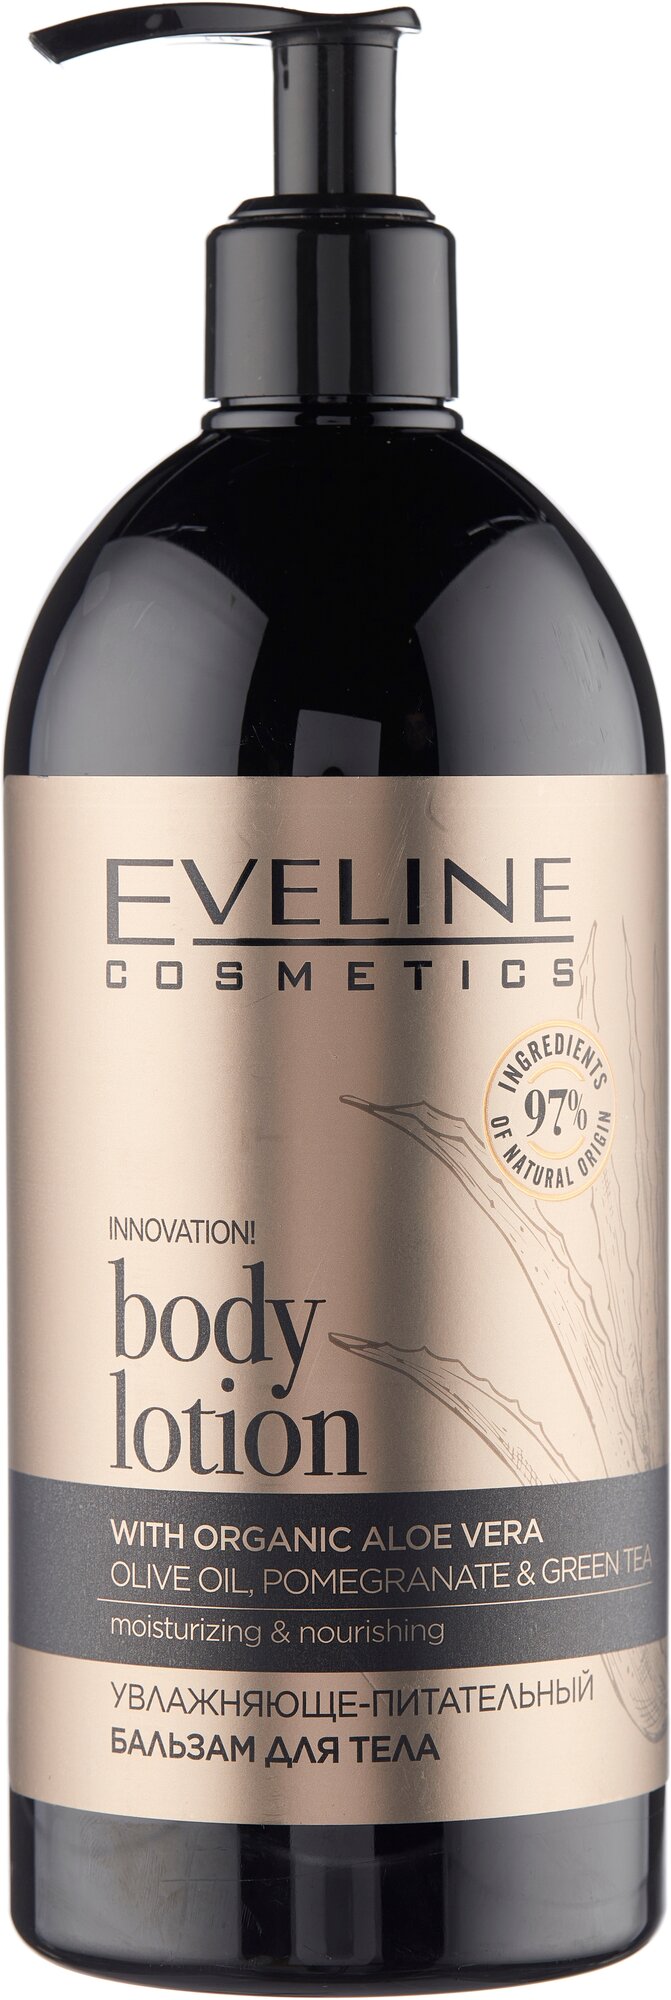 Восстанавливающе-разглаживающий бальзам для тела, Eveline Cosmetics, Organic Gold, 500 мл